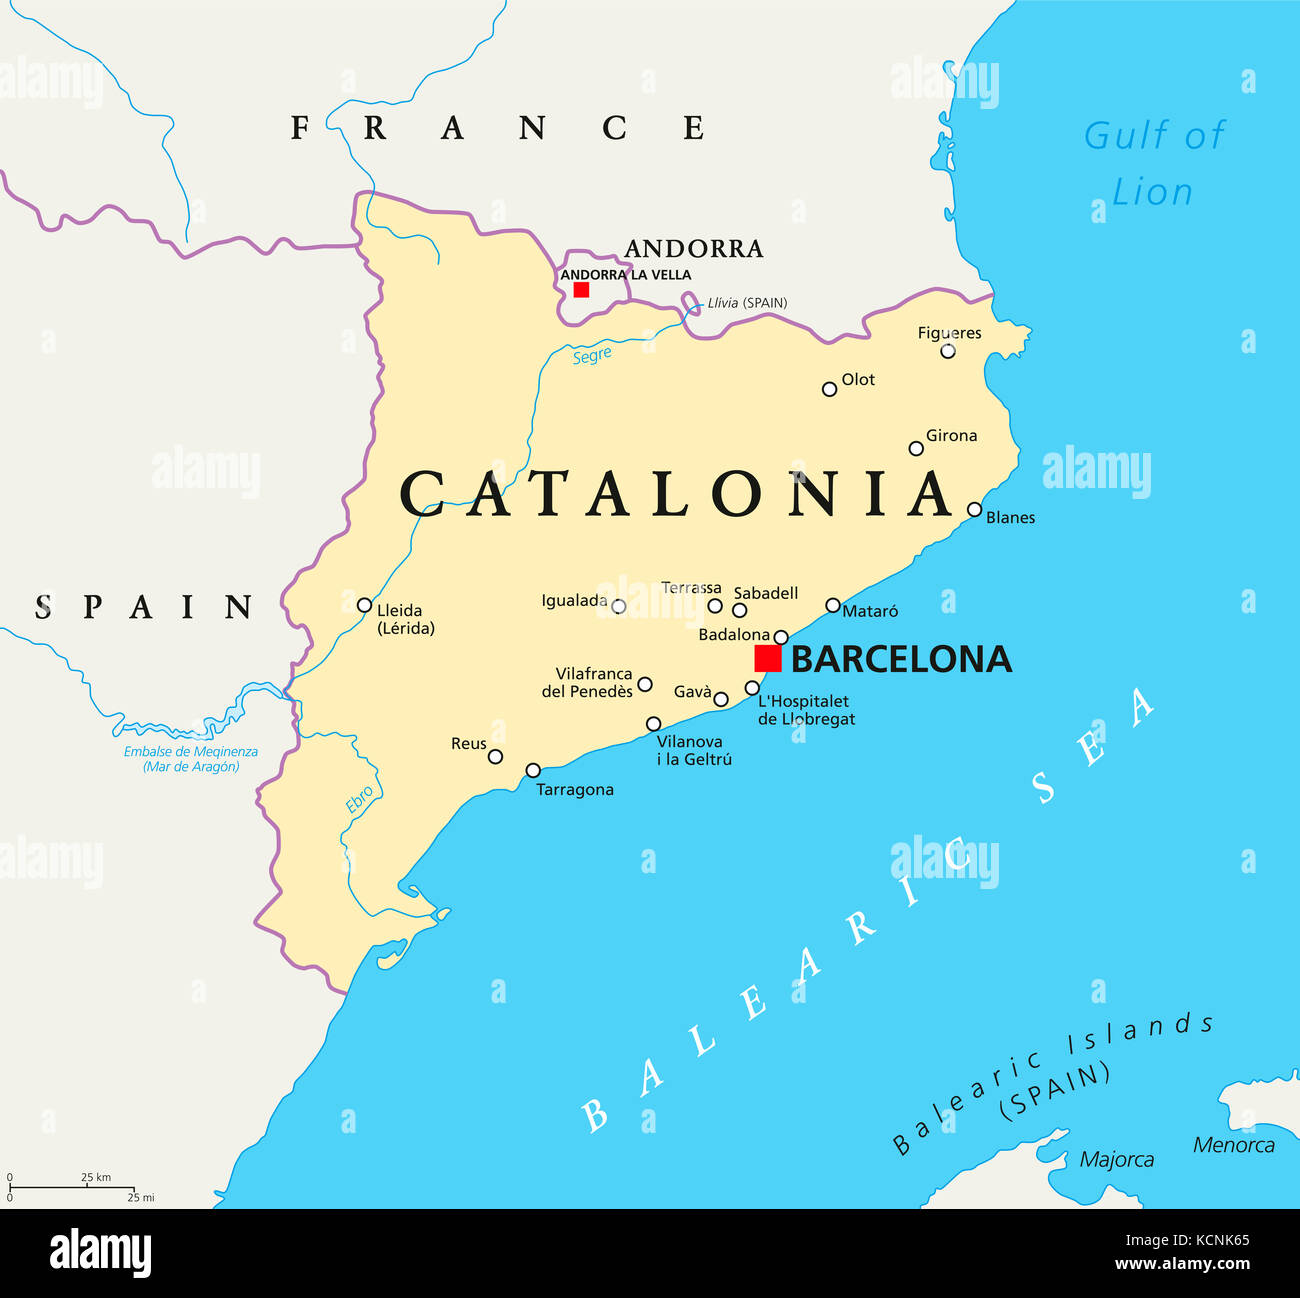 La Catalogna mappa politico con capitale Barcellona, confini e importanti città. delle comunità autonome della Spagna e della penisola iberica. illustrazione. Foto Stock